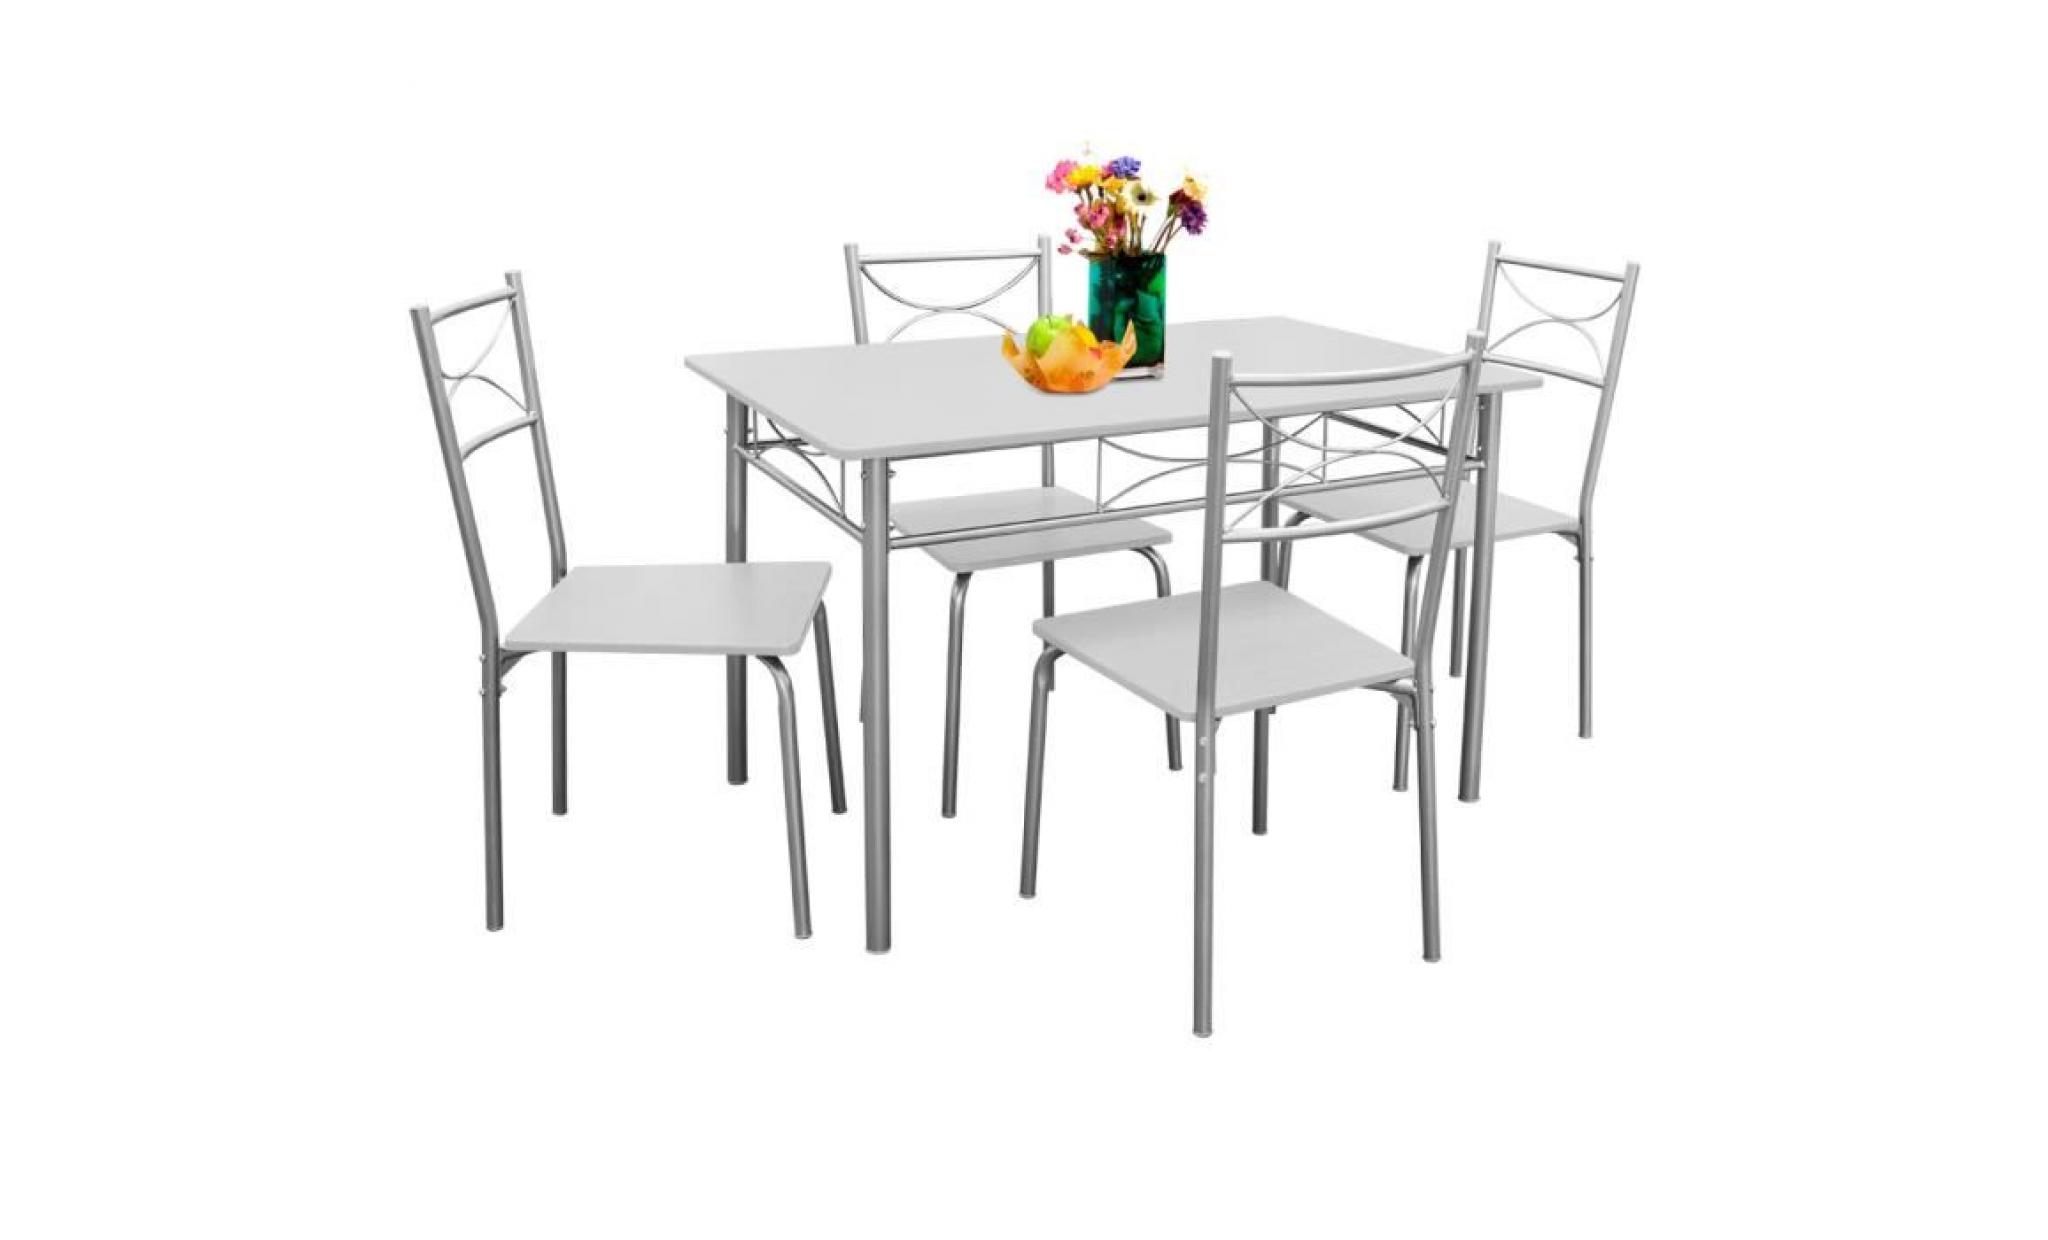 deuba | ensemble paul   salle à manger 5 pièces   1 table et 4 chaises   résistant   couleur hêtre   cuisine pas cher